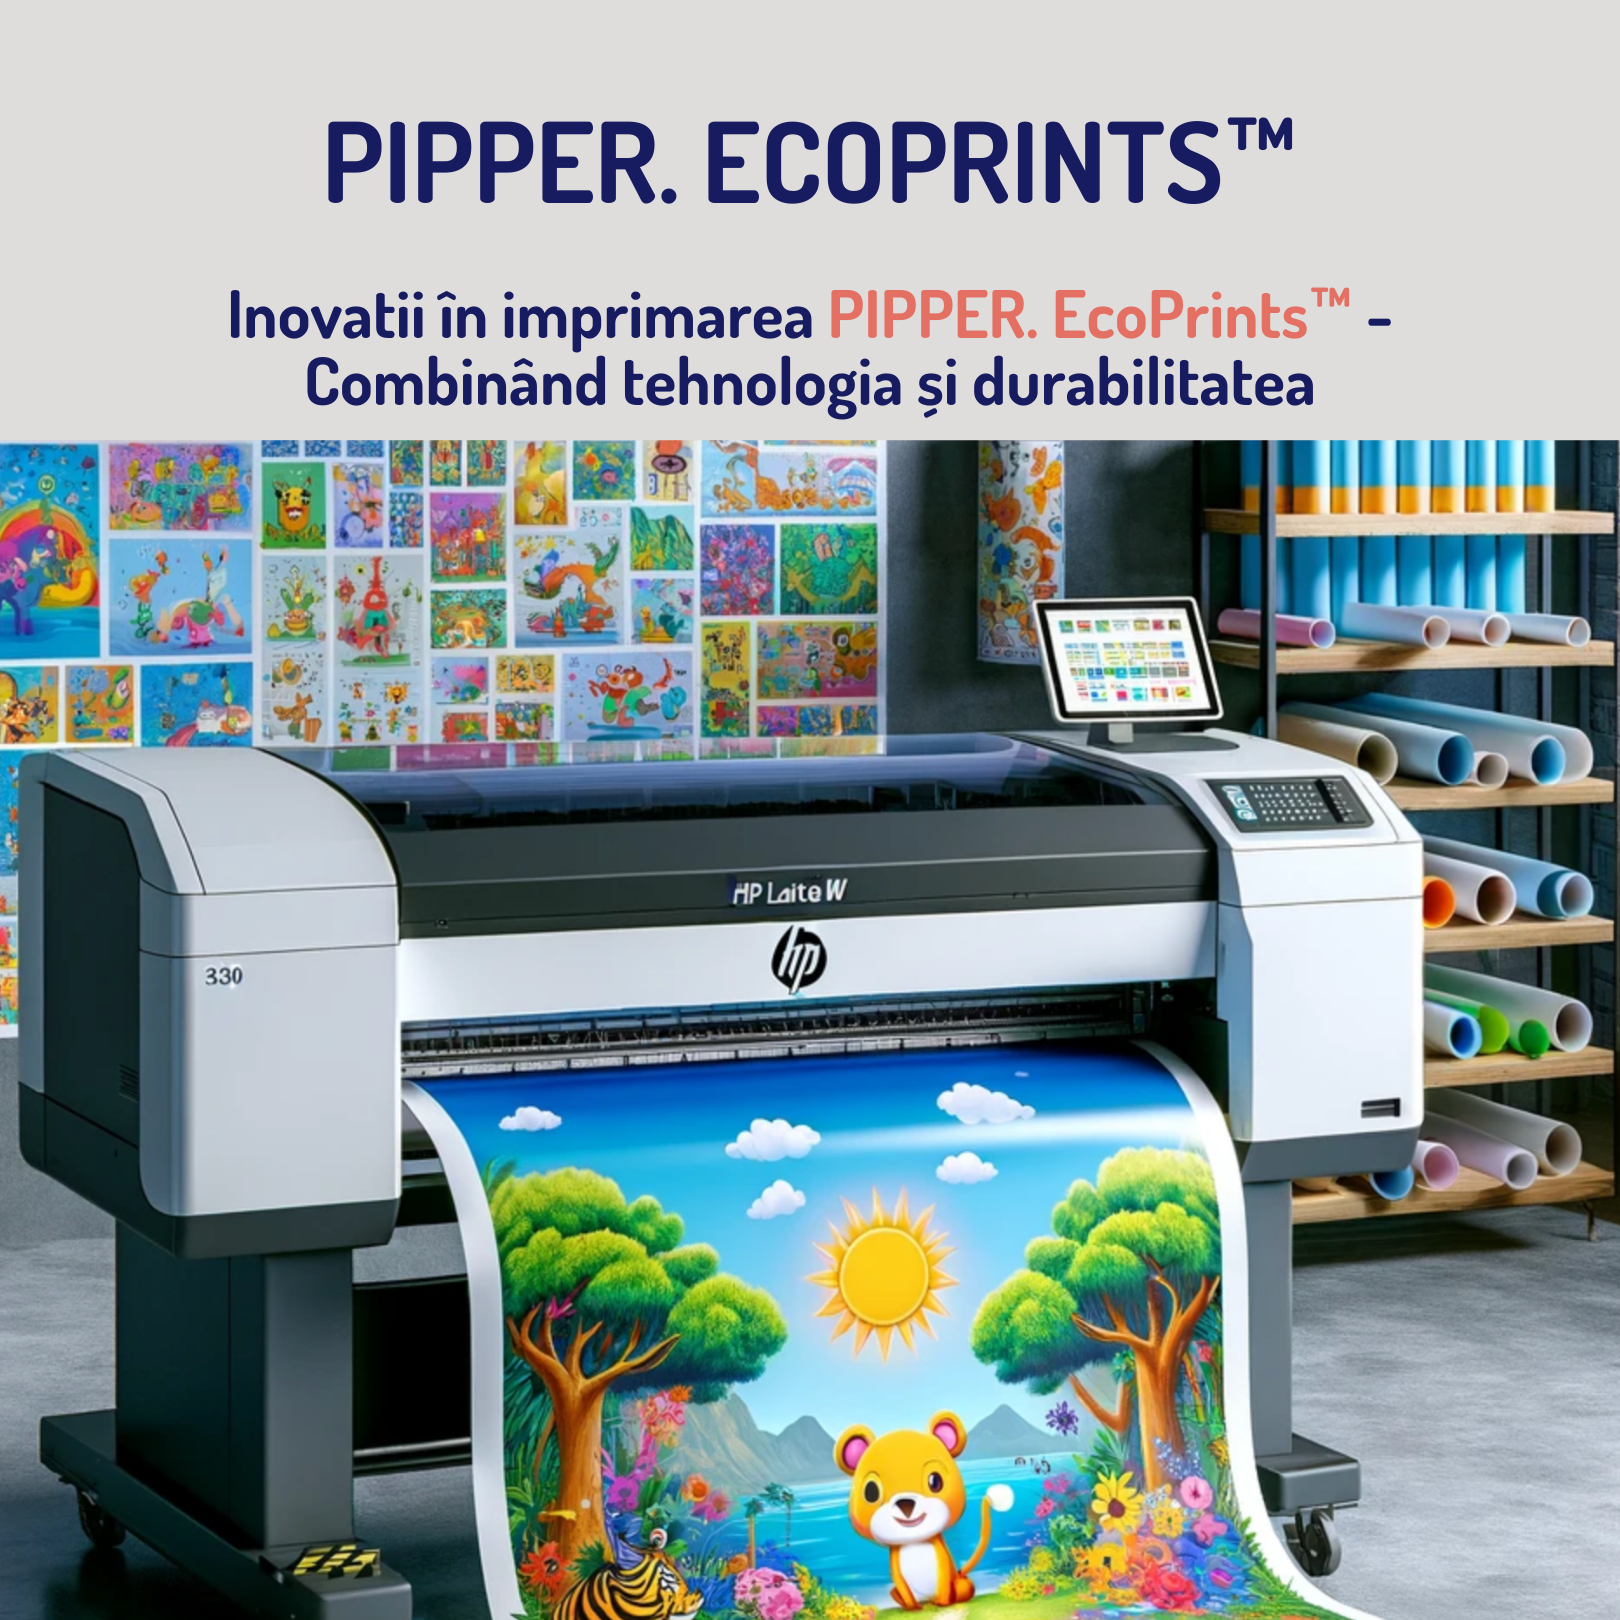 Inovații în imprimarea PIPPER. EcoPrints™ - Combinând tehnologia și sustenabilitatea